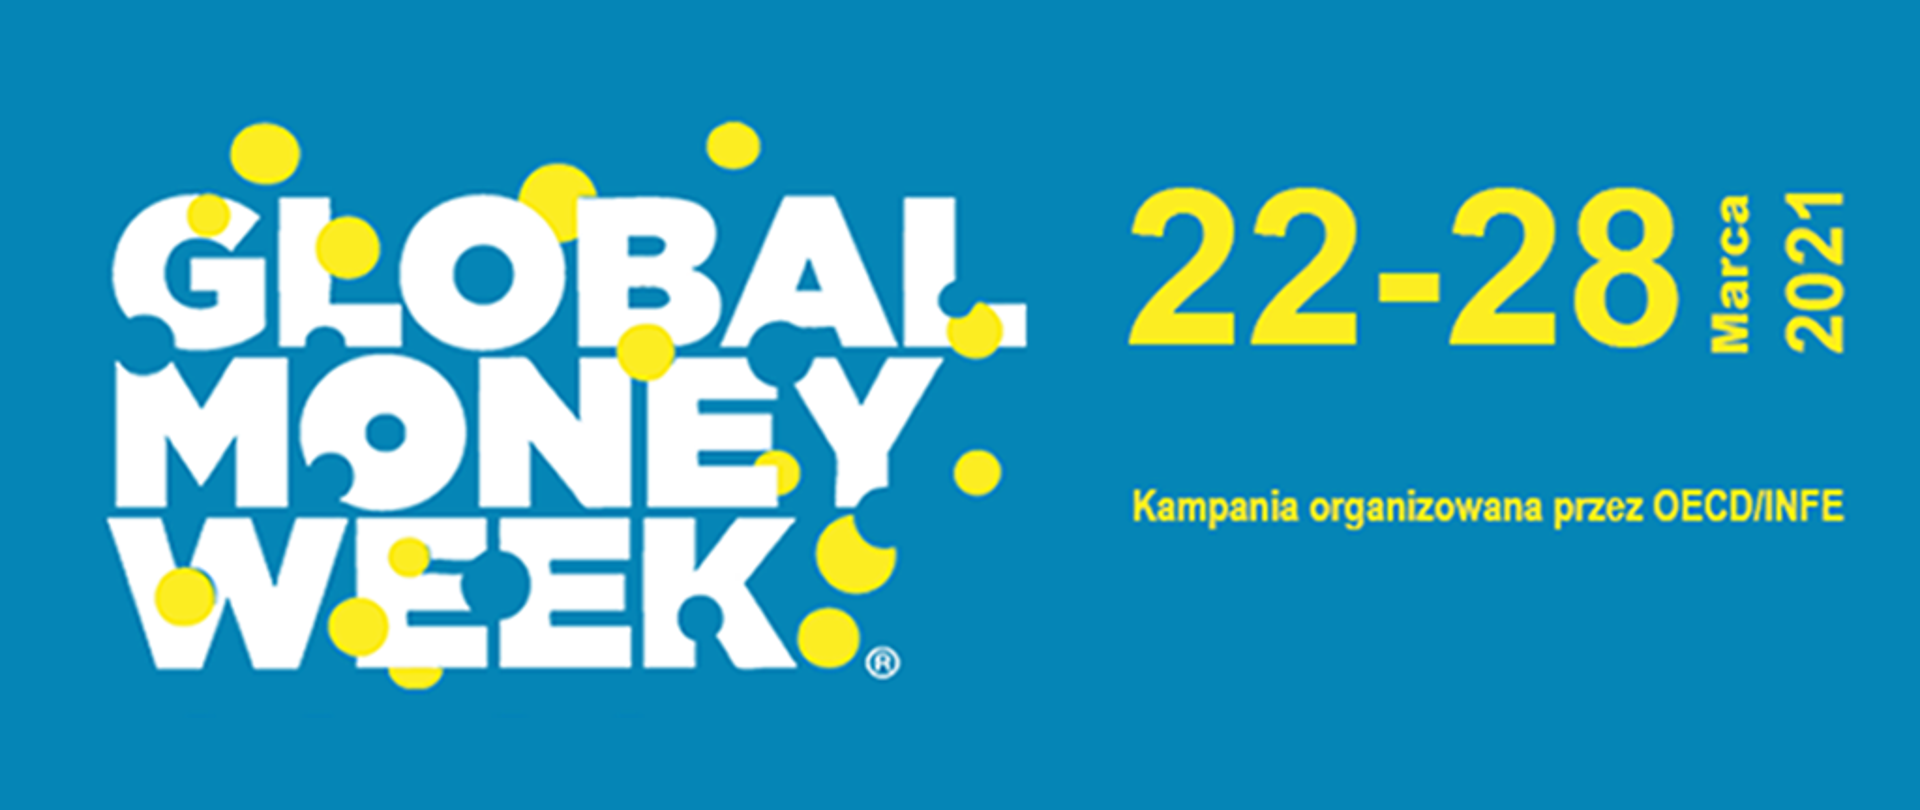 Napis Global Money Week 22-28 marca 2021 Kampania organizowana przez OECD/INFE